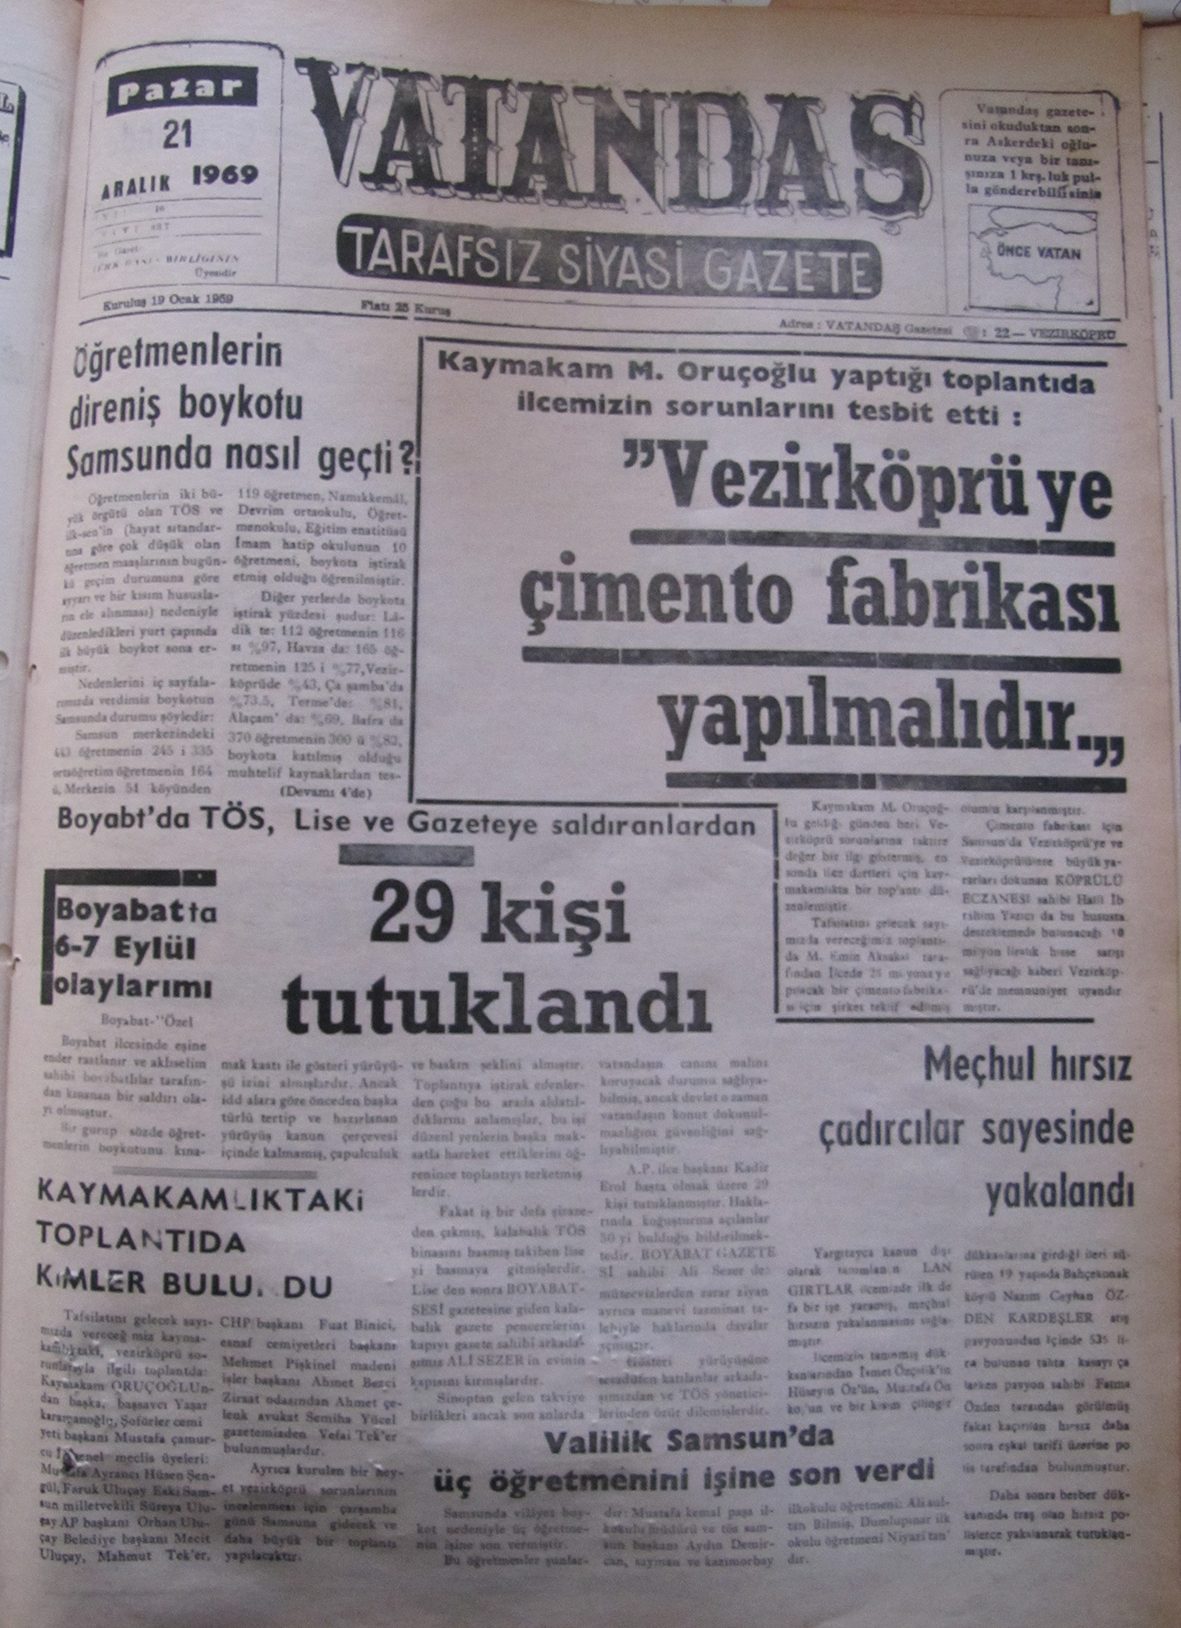 Kaymakam M.Oruçoğlu yaptığı toplantıda ilçemizin sorunlarını tespit etti: “Vezirköprü’ye Çimento Fabrikası Yapılmalıdır” 21 Aralık 1969 Pazar